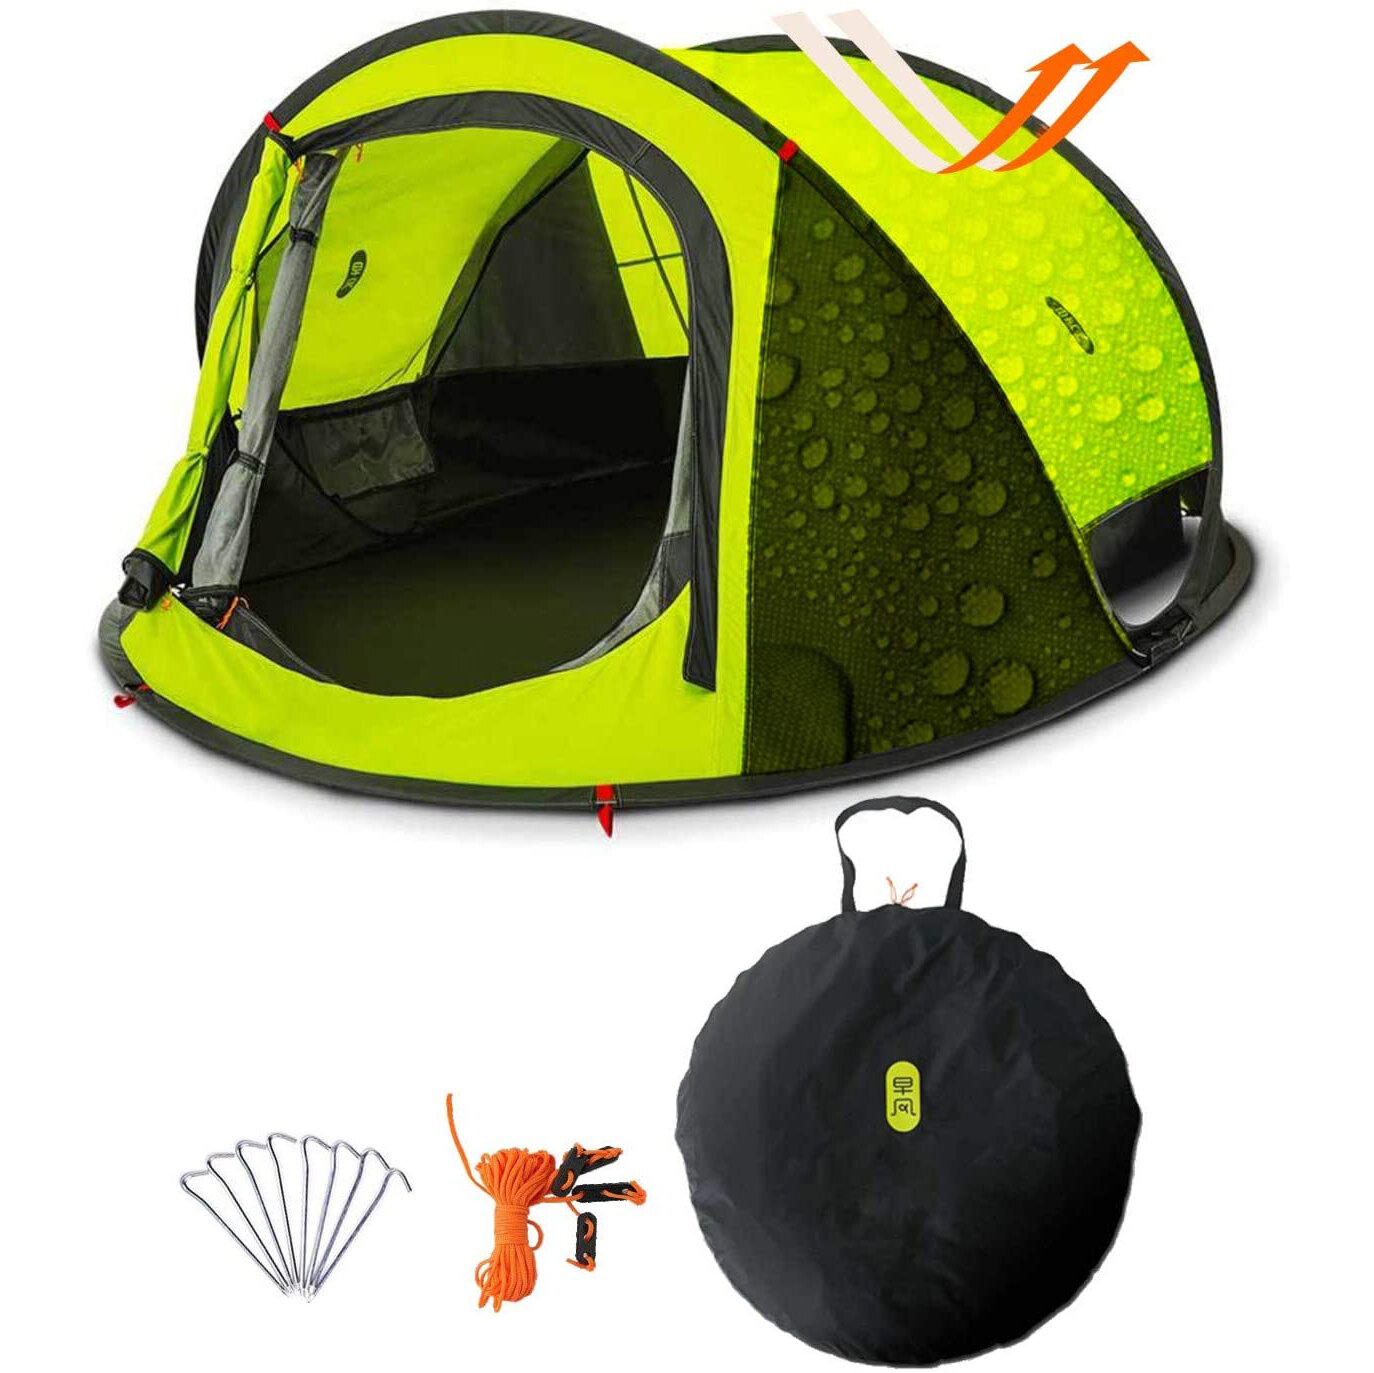 Tente de camping familiale Zenph à double couche pour 3-4 personnes avec ouverture automatique en 3 secondes, abri de soleil imperméable pour le camping en plein air.